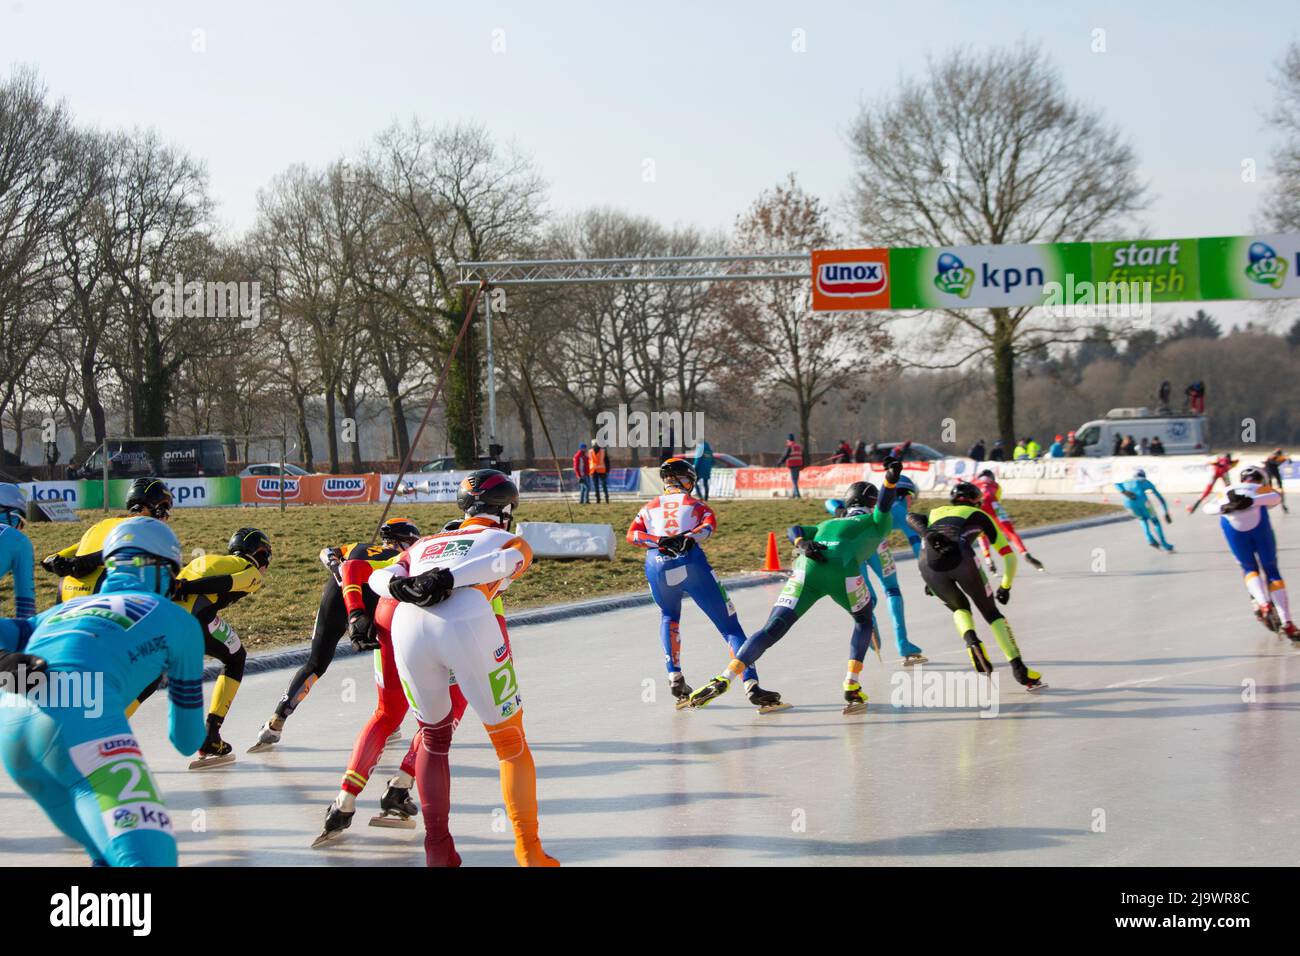 Marathon Ice speed skating on outdoor natural ice in Noordlaren in Drenthe, The Netherlands in 2018.  End results: 1)Simon Schouten, 2) Crispijn Arien Stock Photo